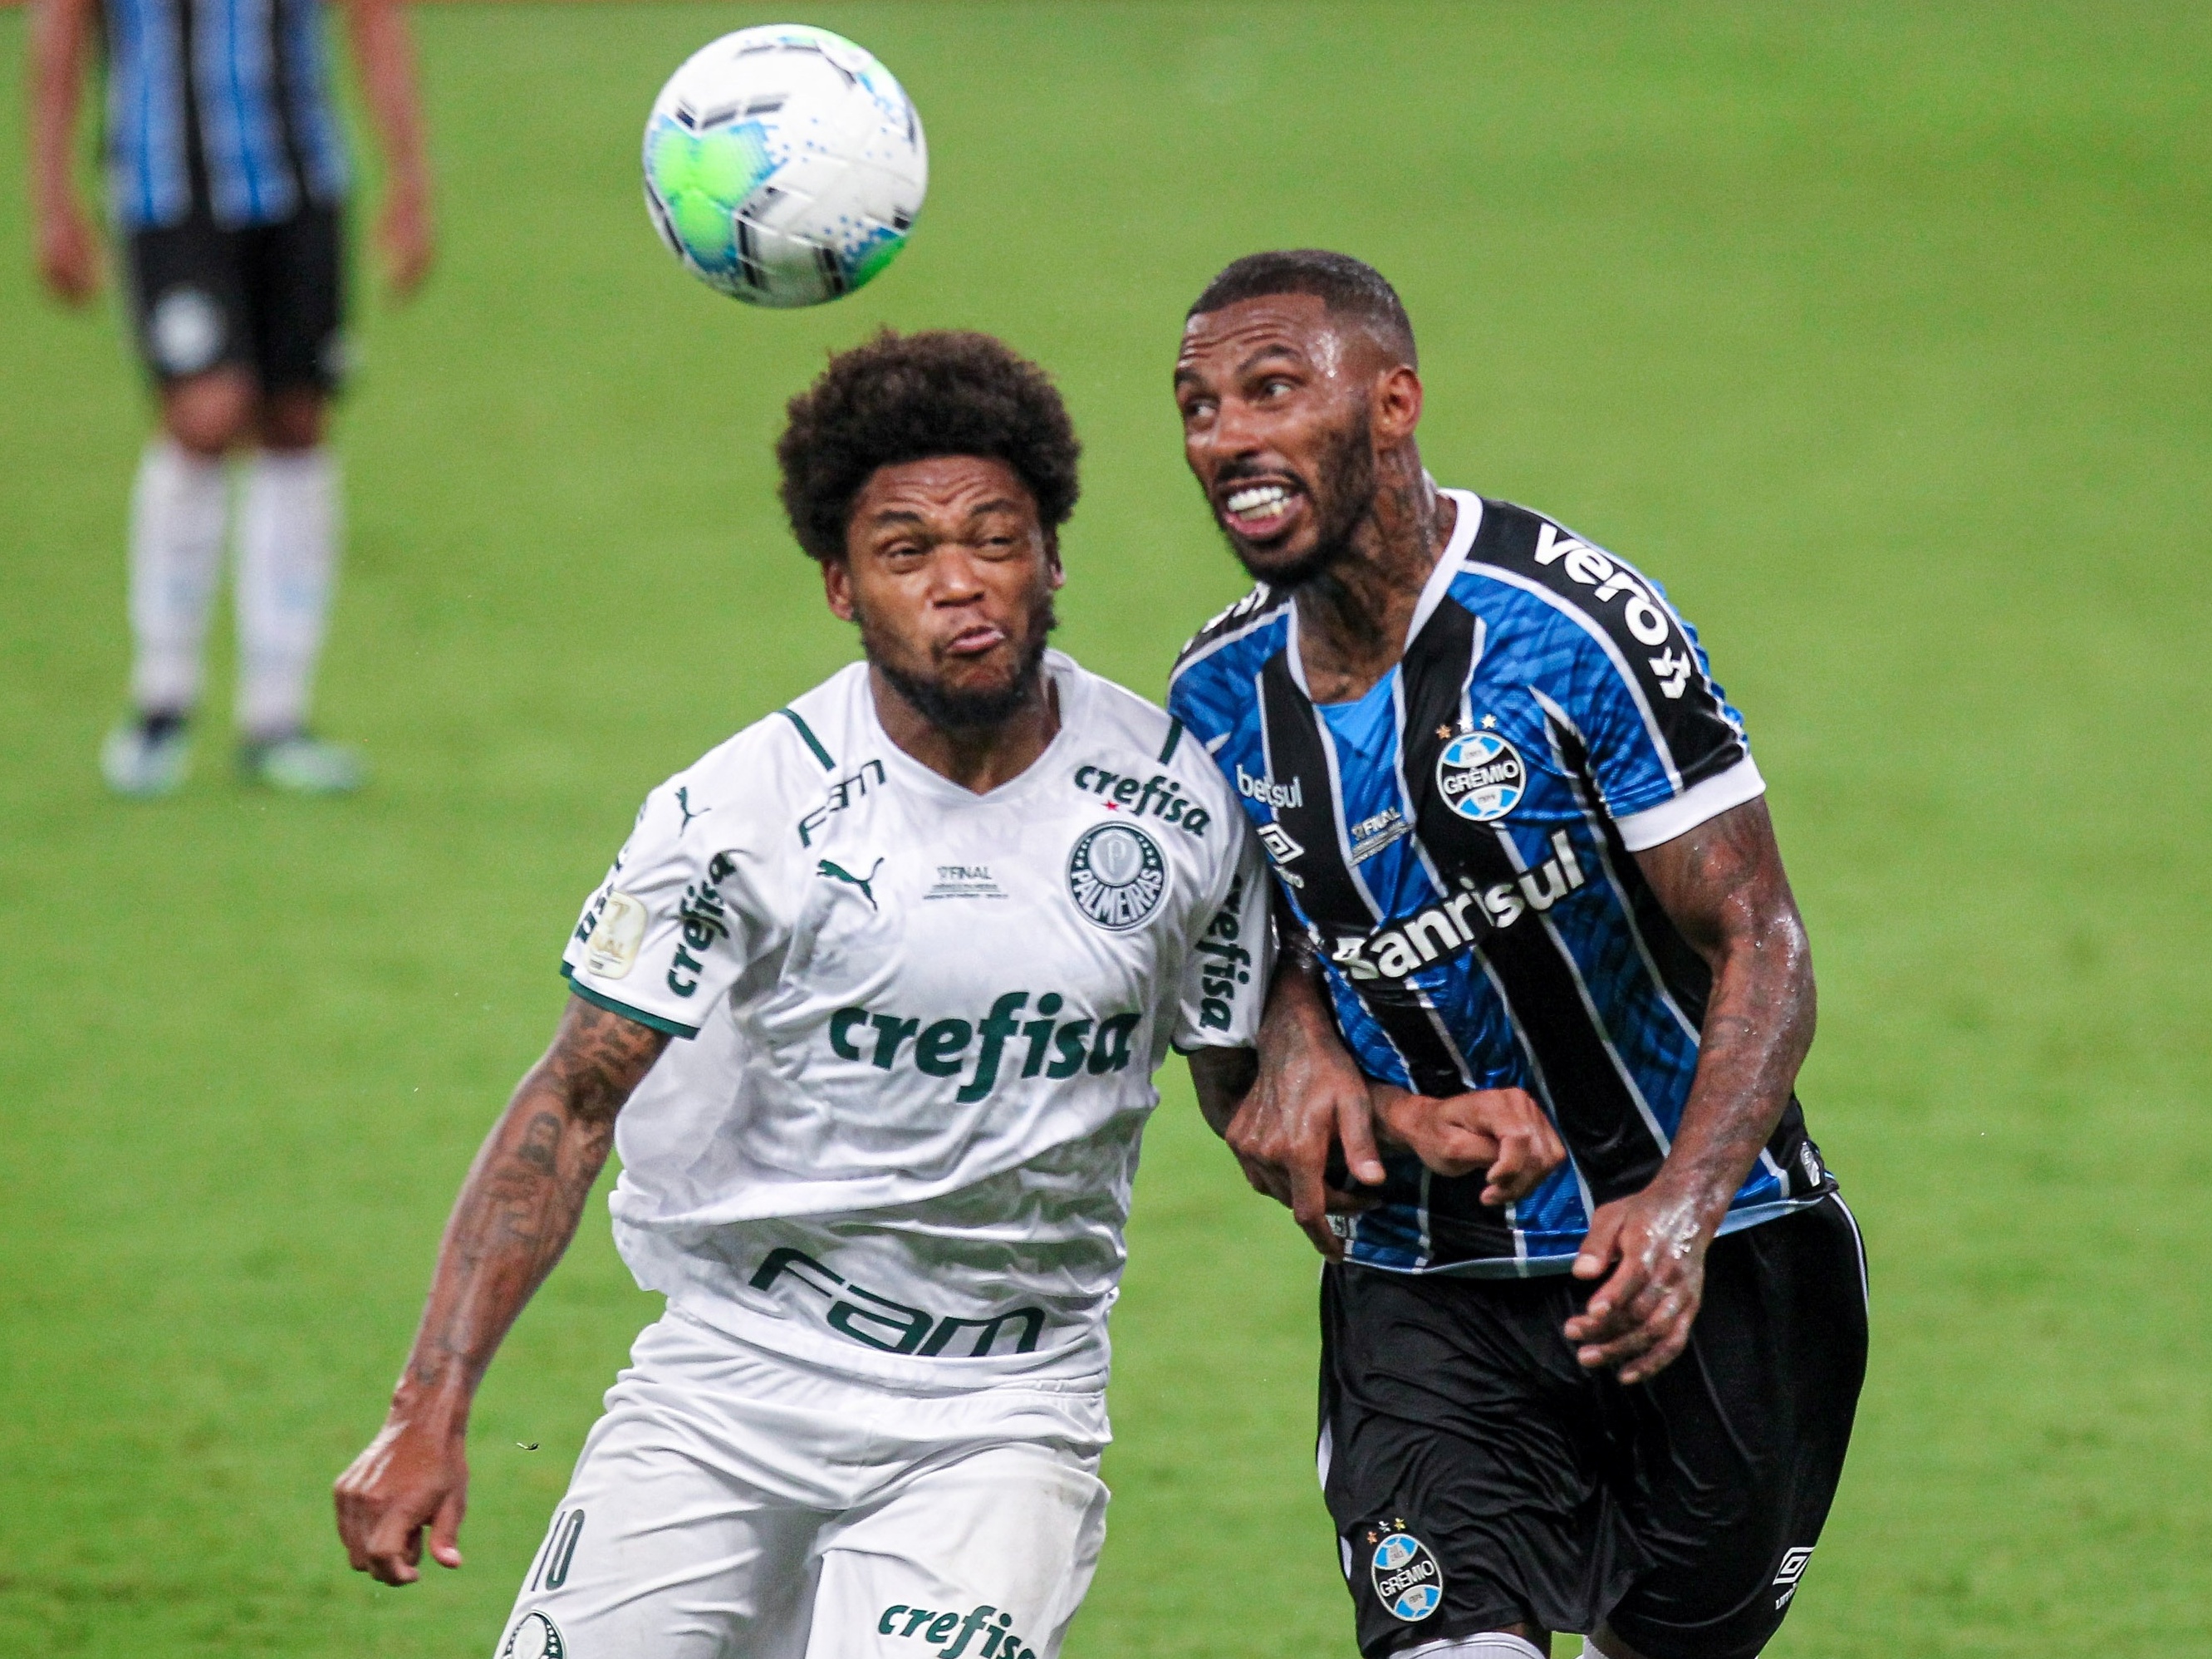 Grêmio x Palmeiras: informações, estatísticas e curiosidades